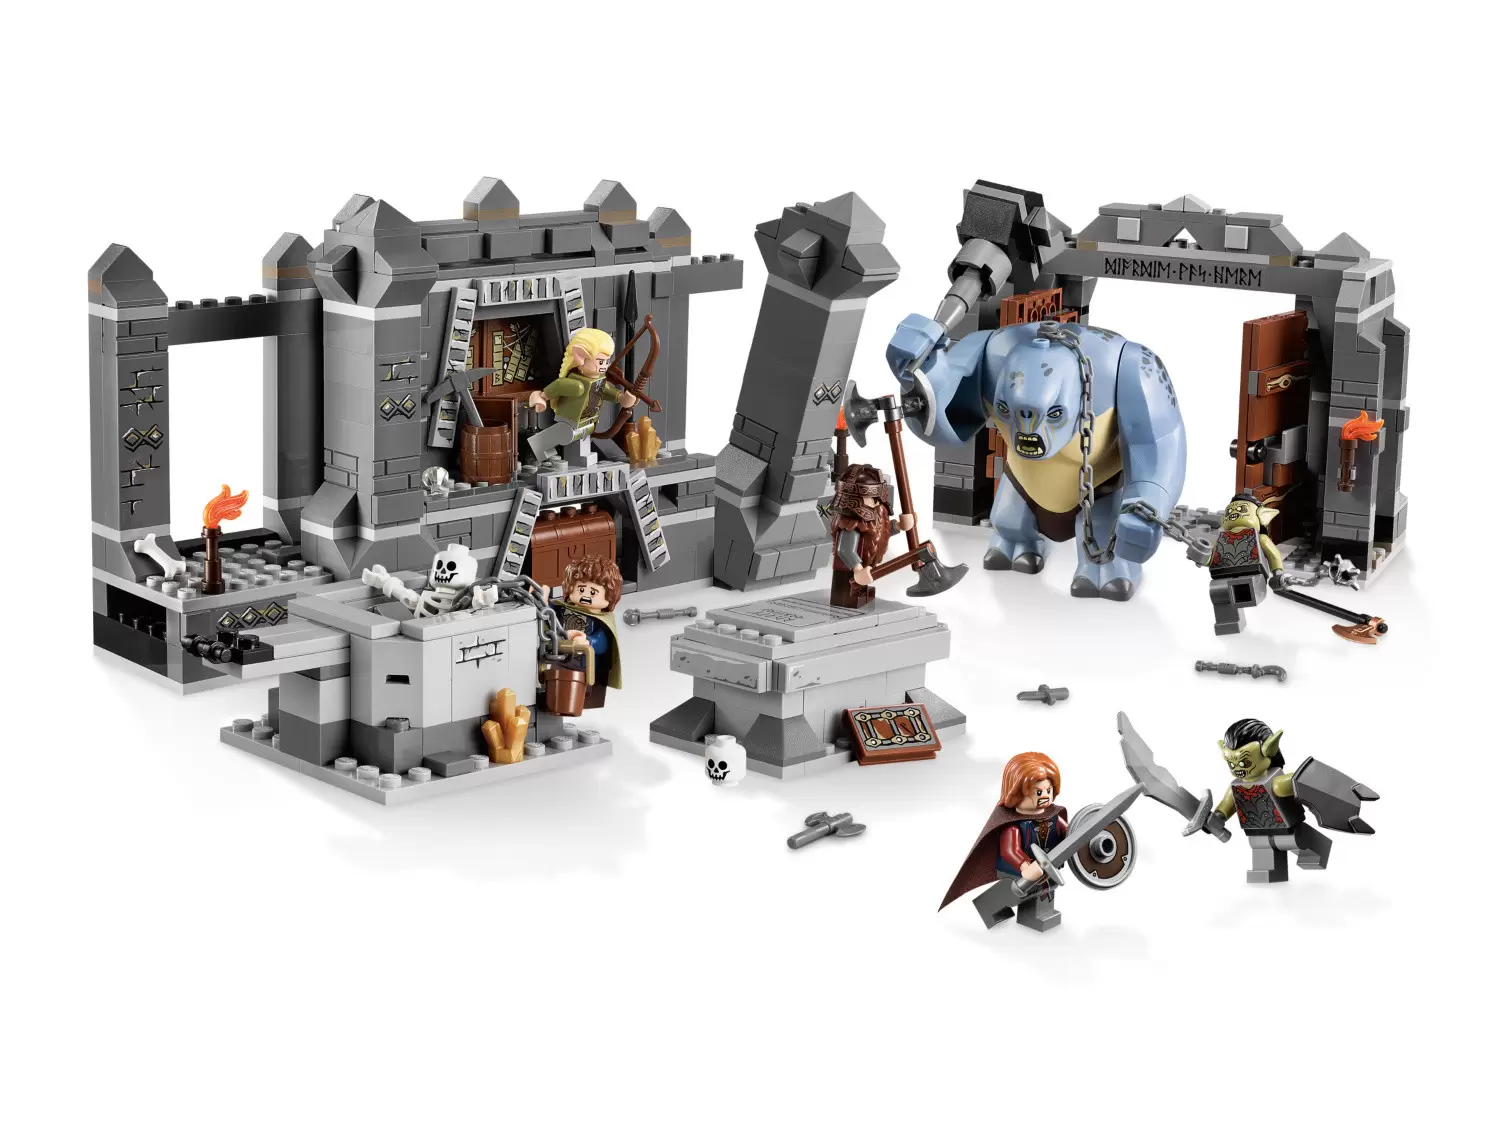 LEGO Le Seigneur des Anneaux - The Mines of Moria